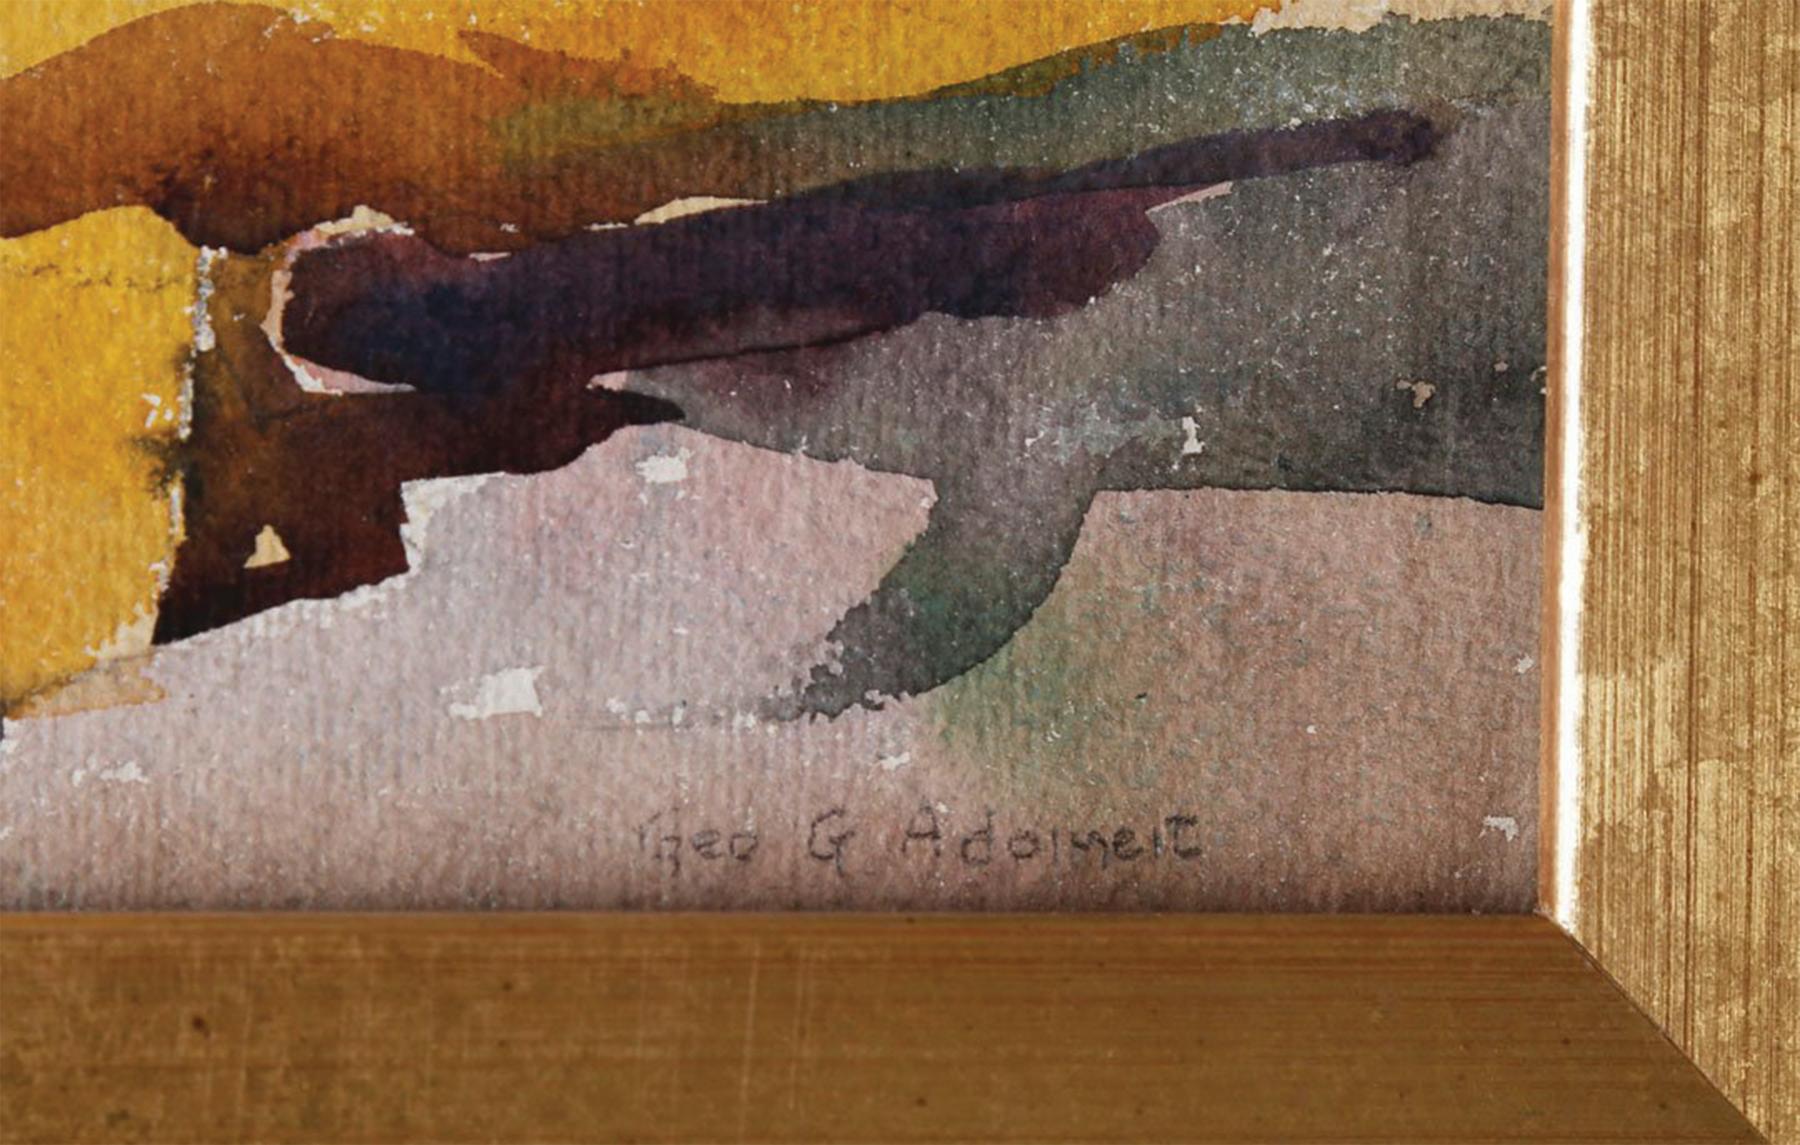 George Gustav Adomeit (Amerikaner, 1879-1967)
Beachside Village, Maine 
Aquarell auf Papier
Signiert unten rechts
10 x 14 Zoll
17,75 x 21,75 Zoll, gerahmt

George Adomeit, ein bedeutender Maler amerikanischer Szenen, wurde in Memel, Deutschland,